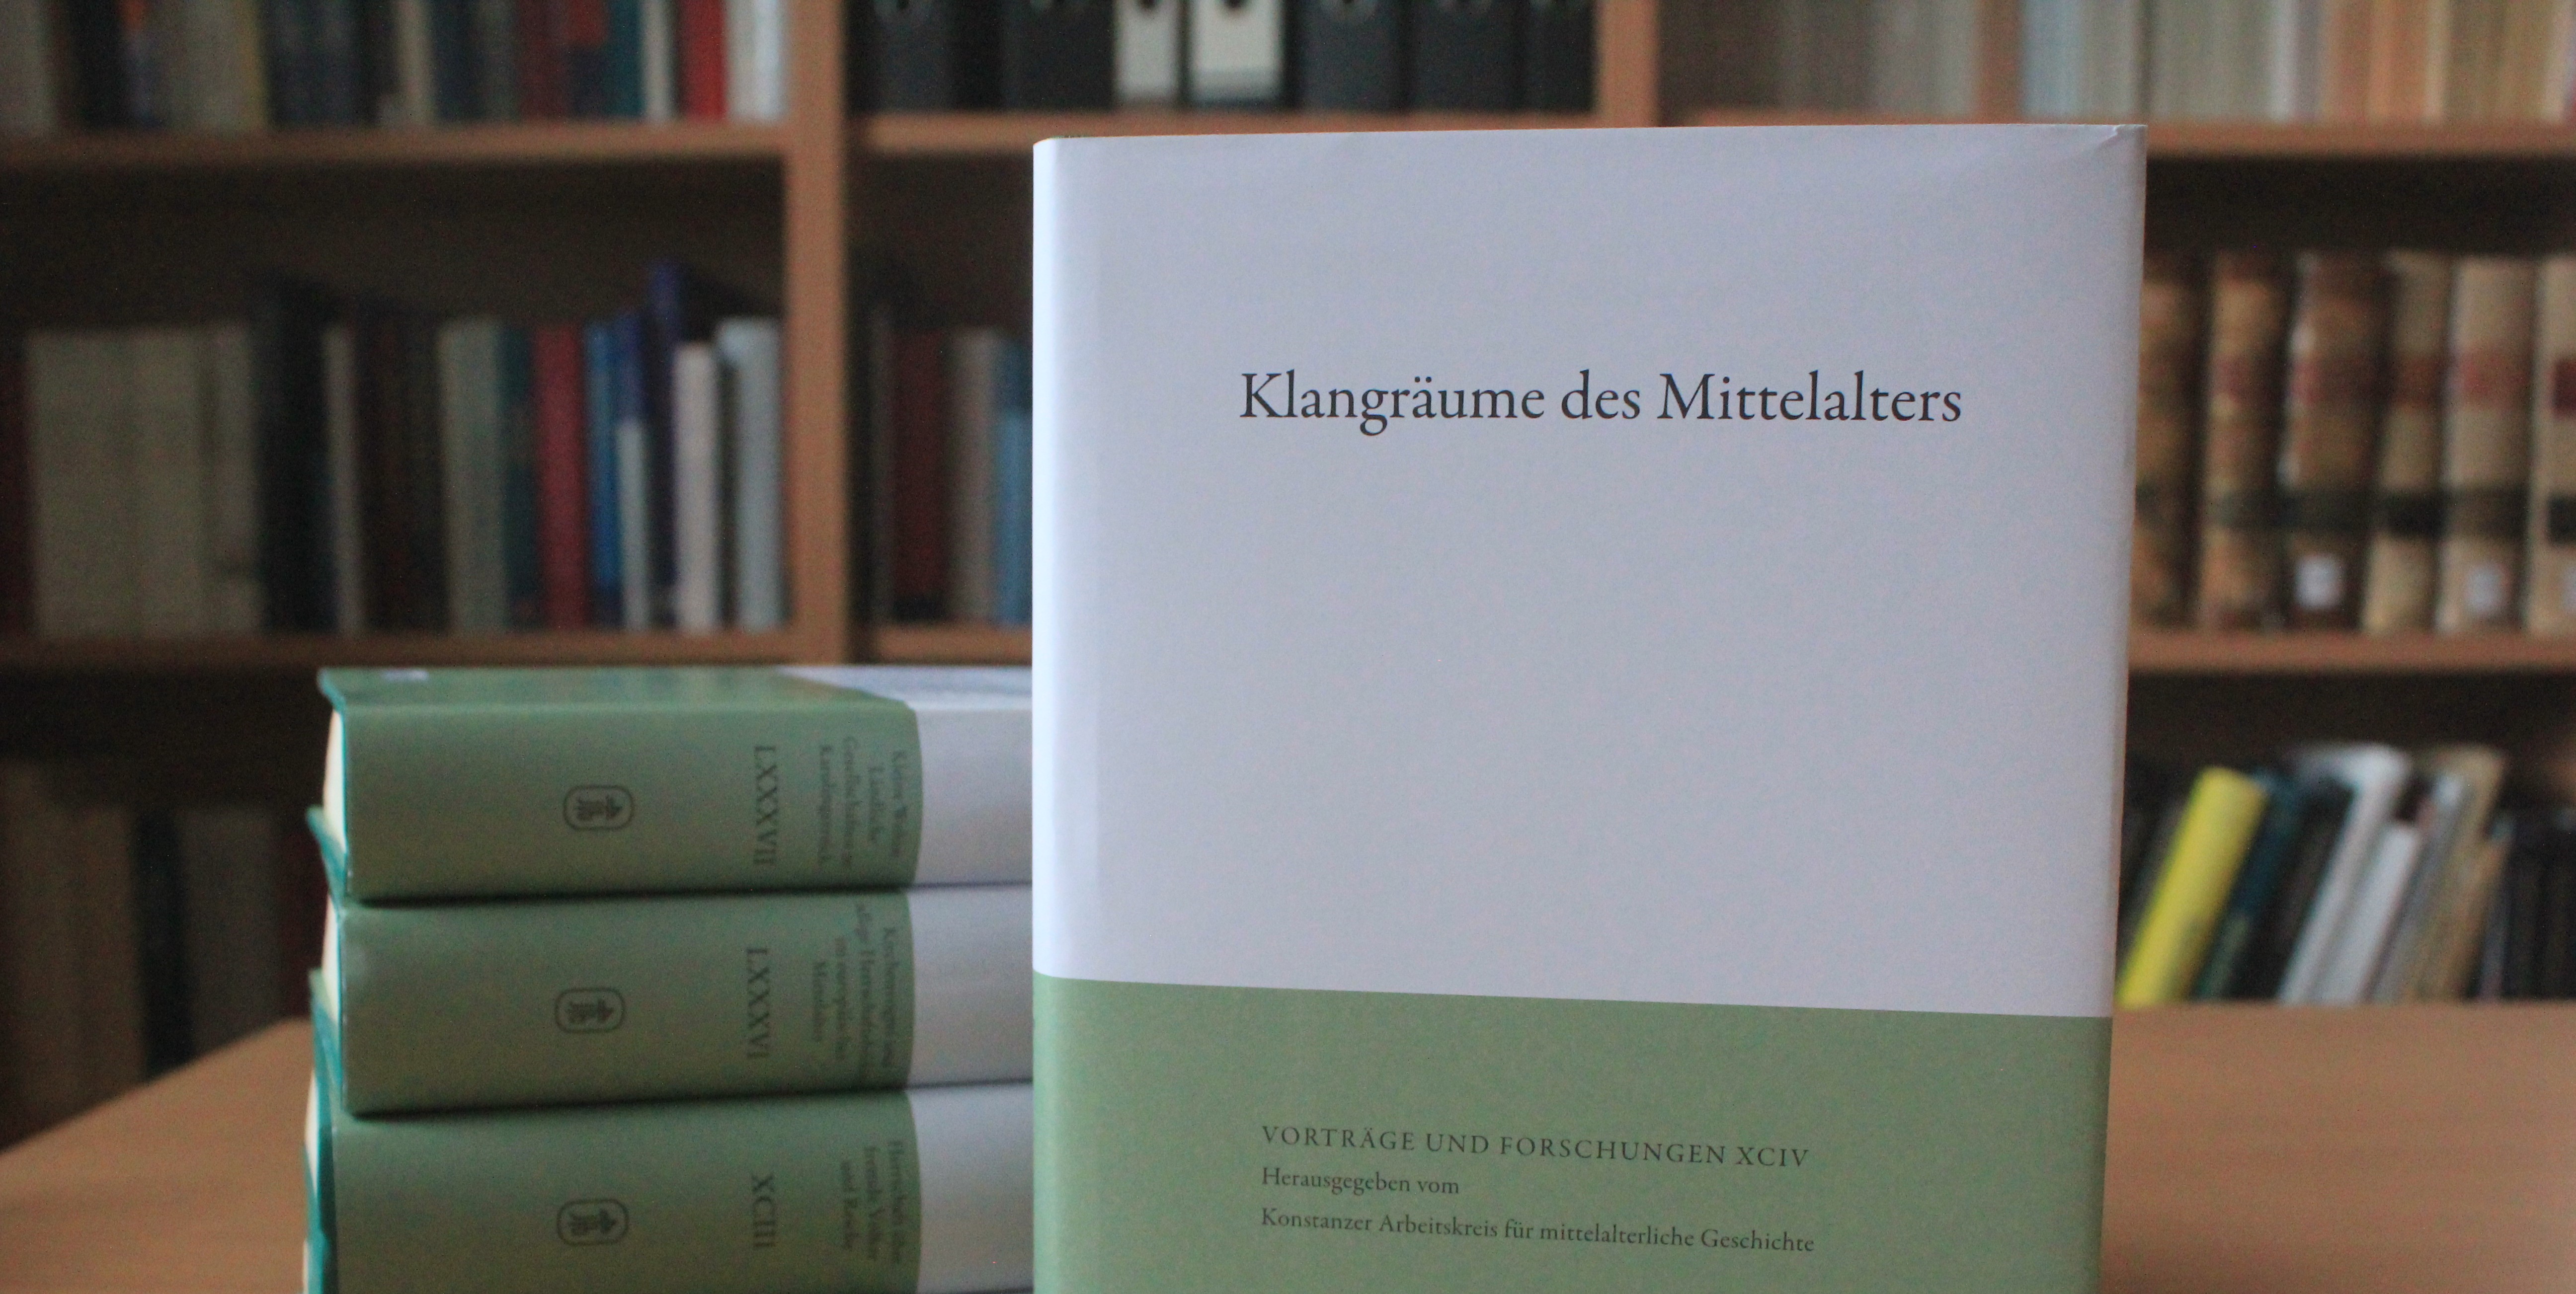 <p>Das Buch mit dem Titel »Klangräume des Mittelalters« wurde von Nikolas Jaspert und Harald Müller herausgegeben und geht auf eine Tagung des Konstanzer Arbeitskreises vom Frühjahr 2019 zurück.</p>
